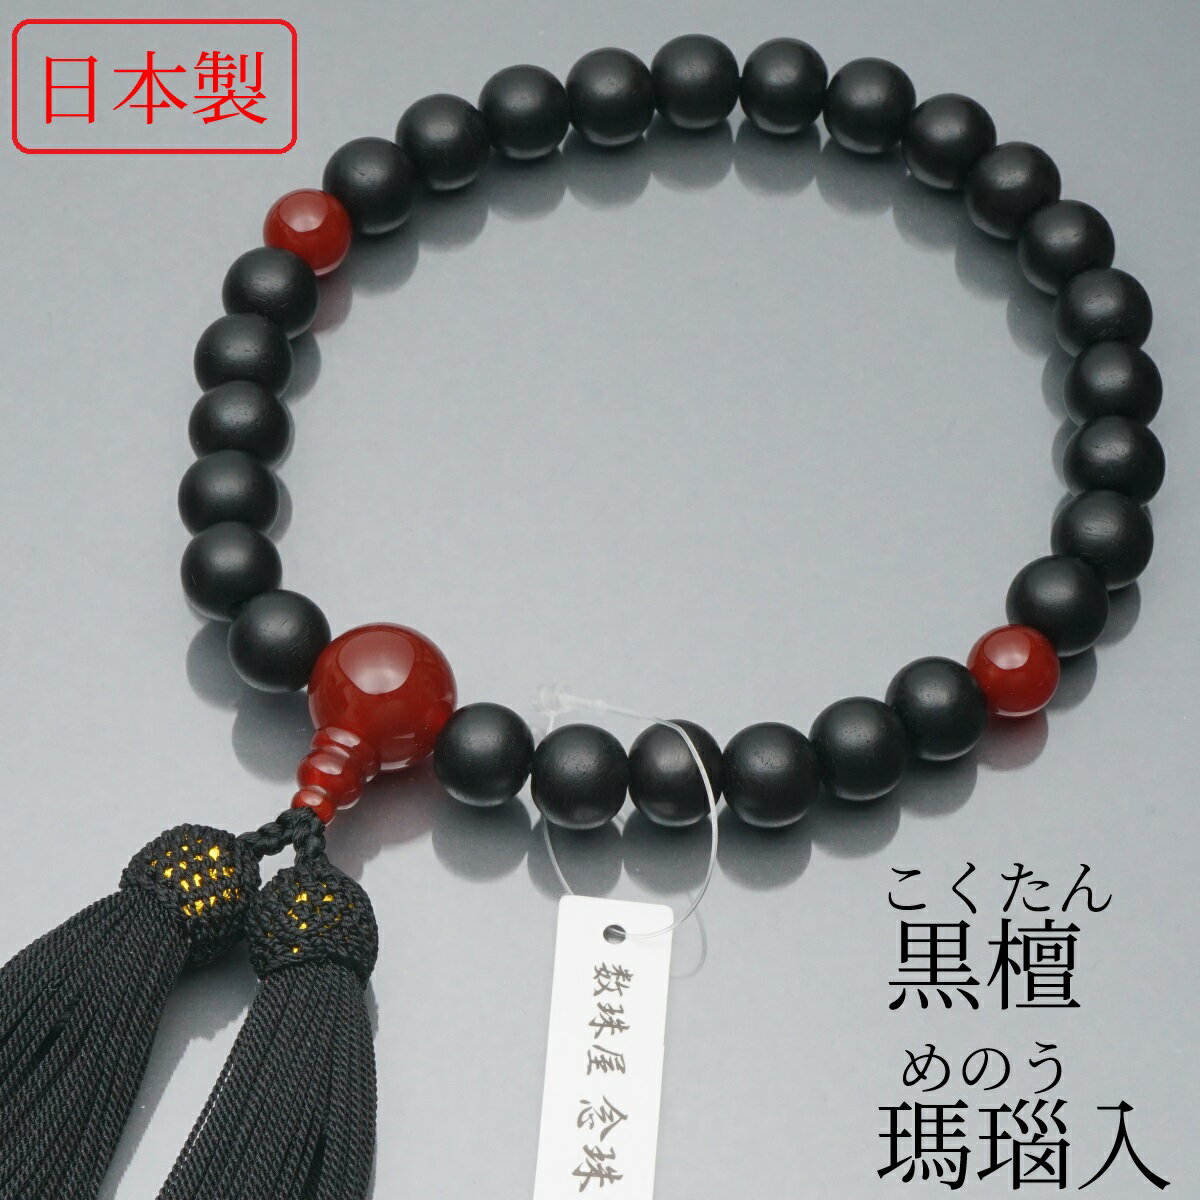 日本製 数珠 男性用 黒檀 瑪瑙(めのう)入 正絹房 数珠袋付き 